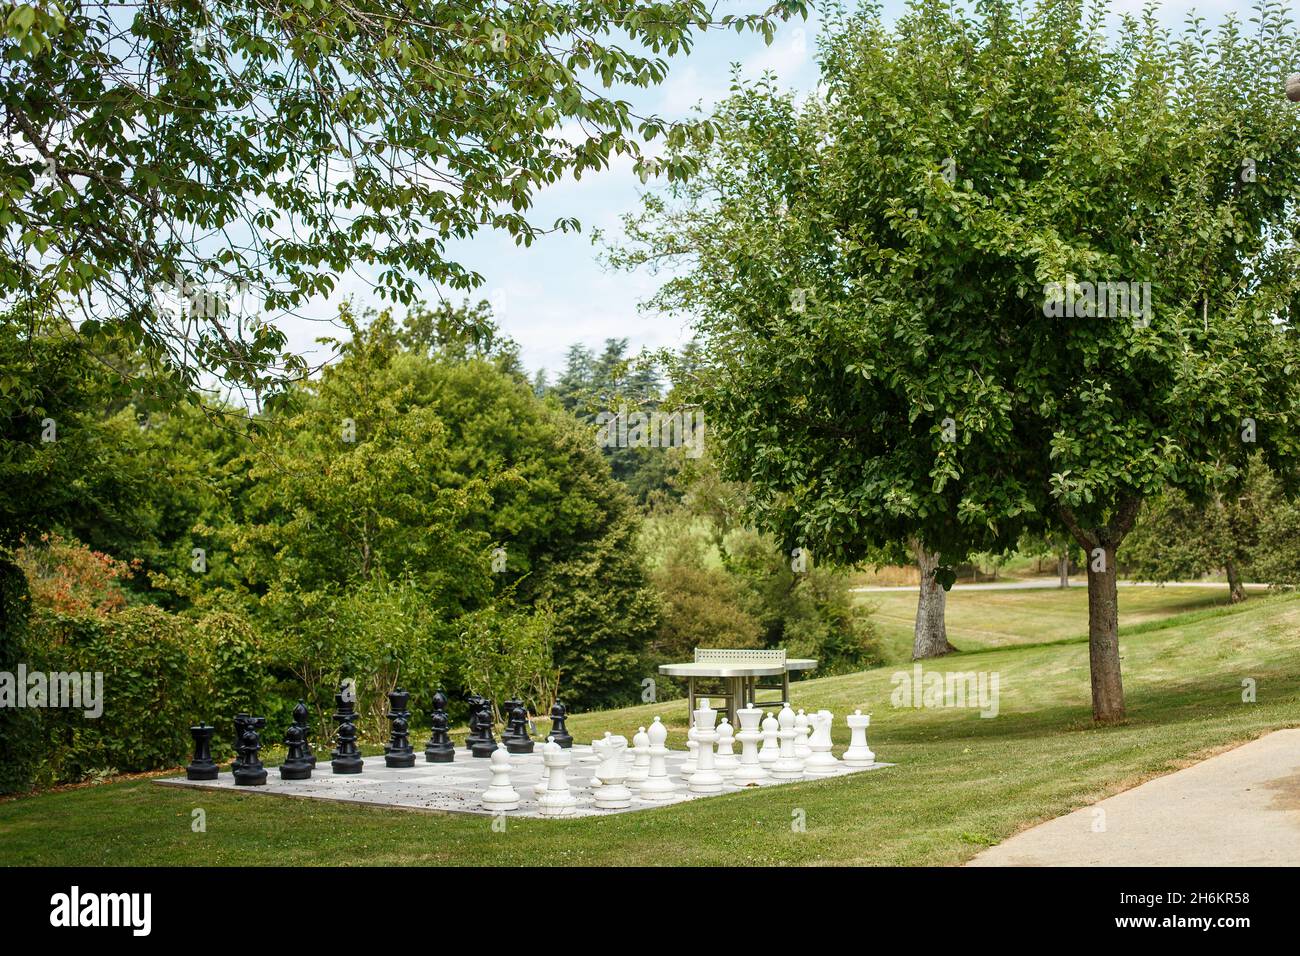 Bordeaux, Francia - 2019: Scacchi giganti in piedi nel parco. Scacchiera tra erba verde e alberi. Concetto di giochi intellettuali all'aperto, tempo libero Foto Stock